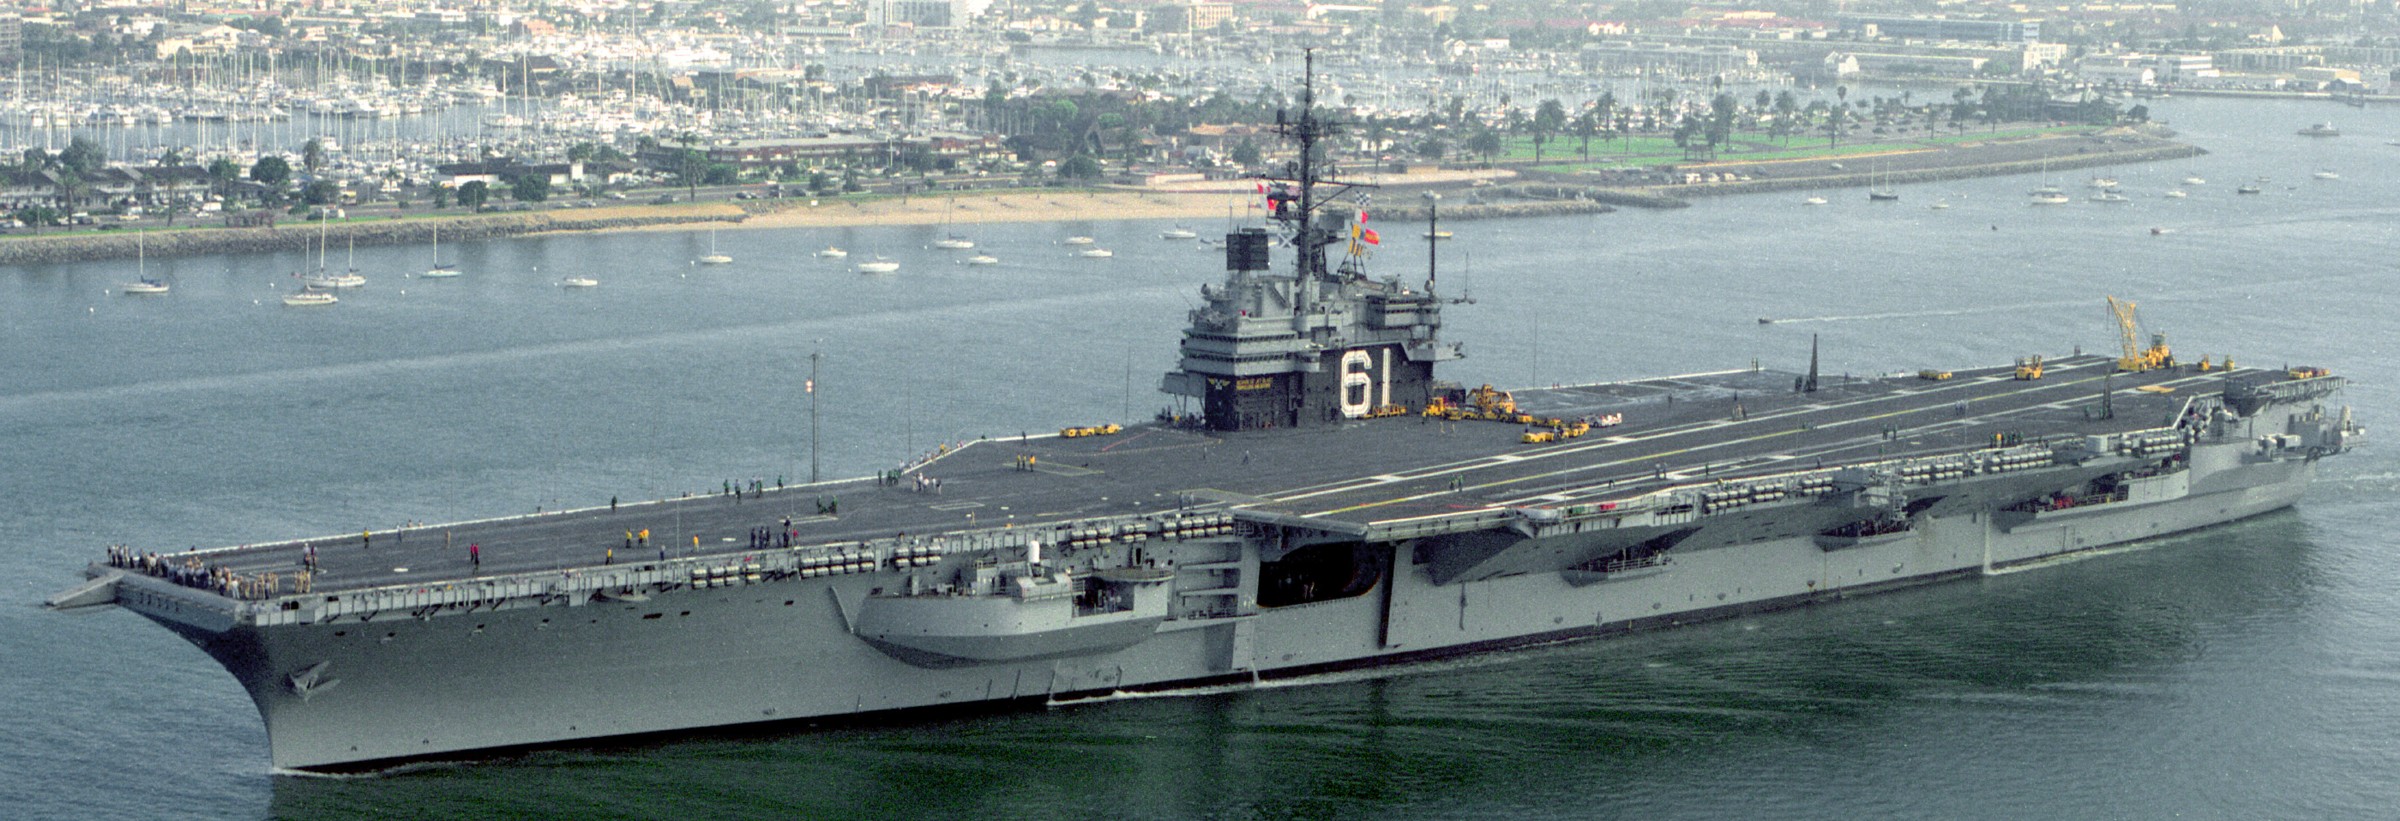 cv-61 uss ranger forrestal class aircraft carrier us navy san diego 1990 83